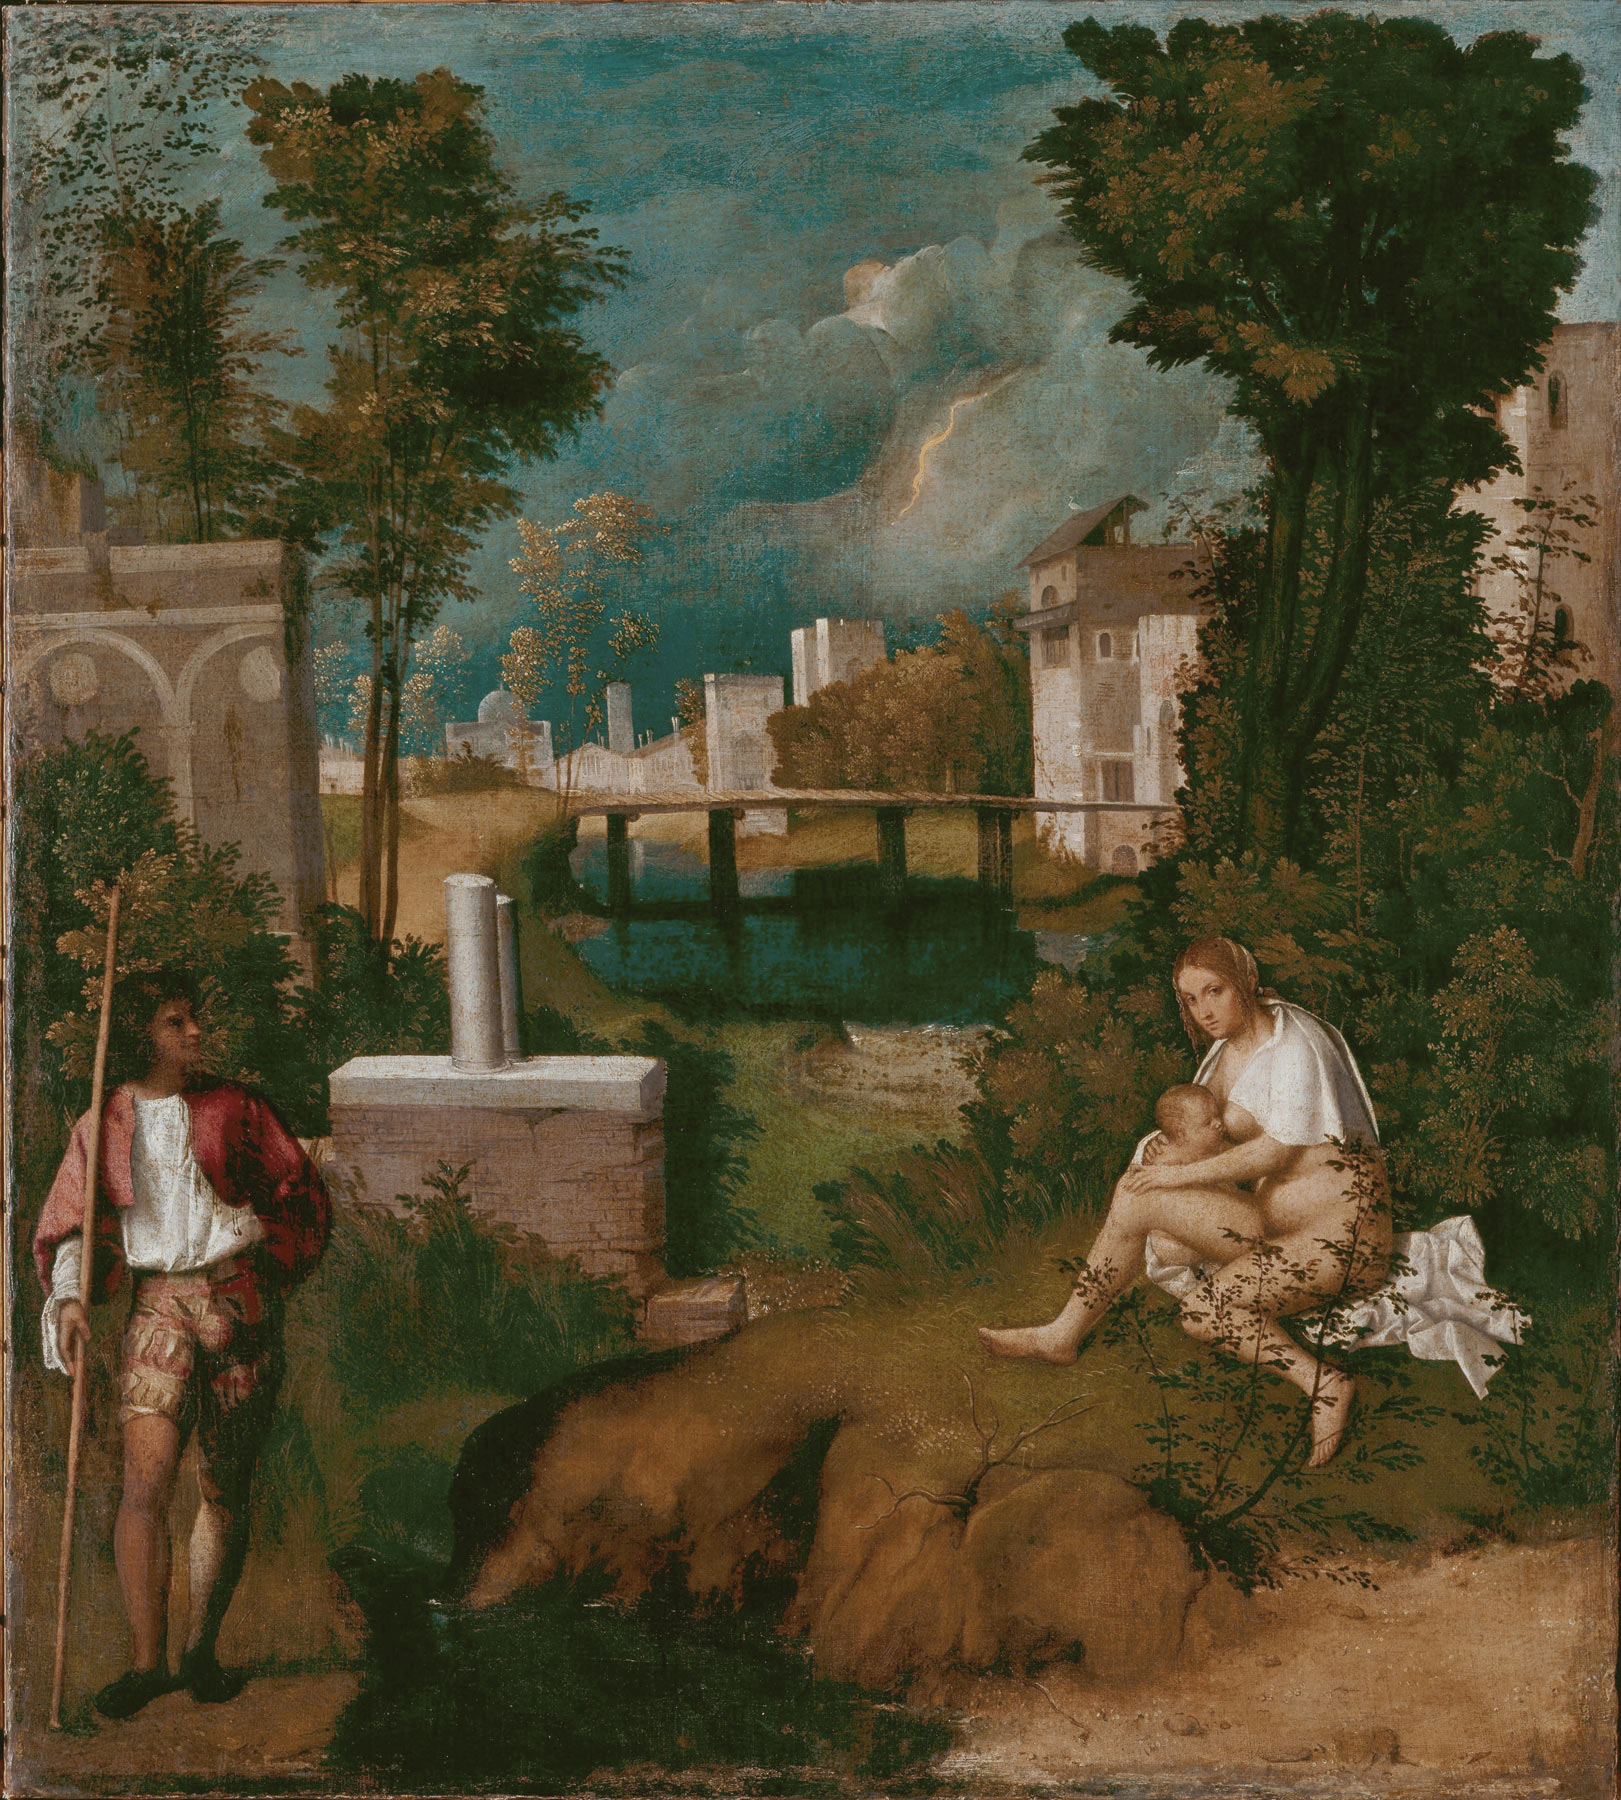 Giorgione, La Tempesta (1502-1505; olio su tela, 83 x 73 cm; Venezia, Gallerie dell’Accademia)